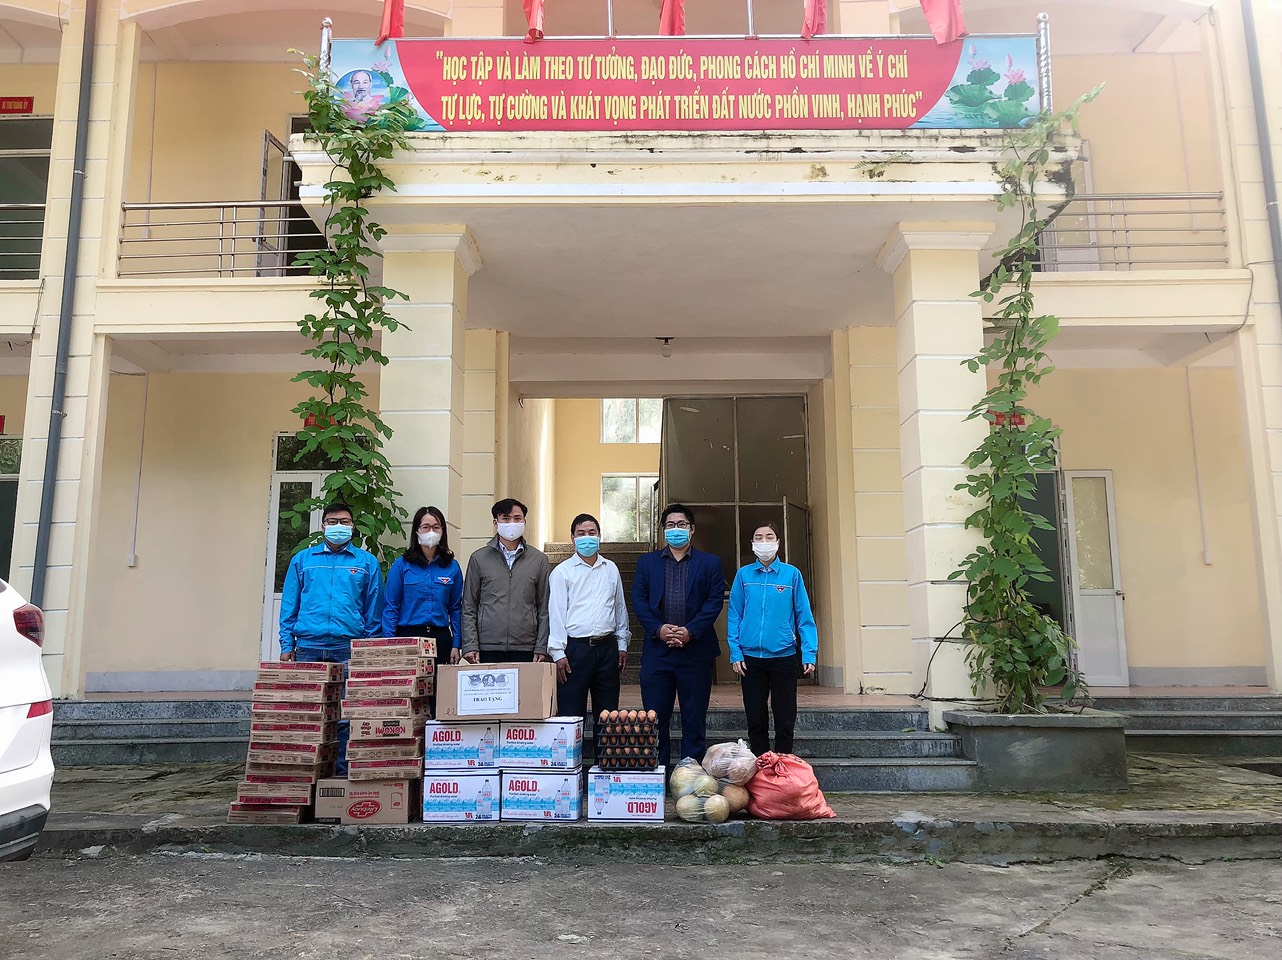 Huyện đoàn Bắc Mê và Ngân hàng Liên việt chi nhánh huyện Bắc mê trao tặng quà ủng hộ phòng, chống dịch Covid-19 tại xã Lạc Nông.